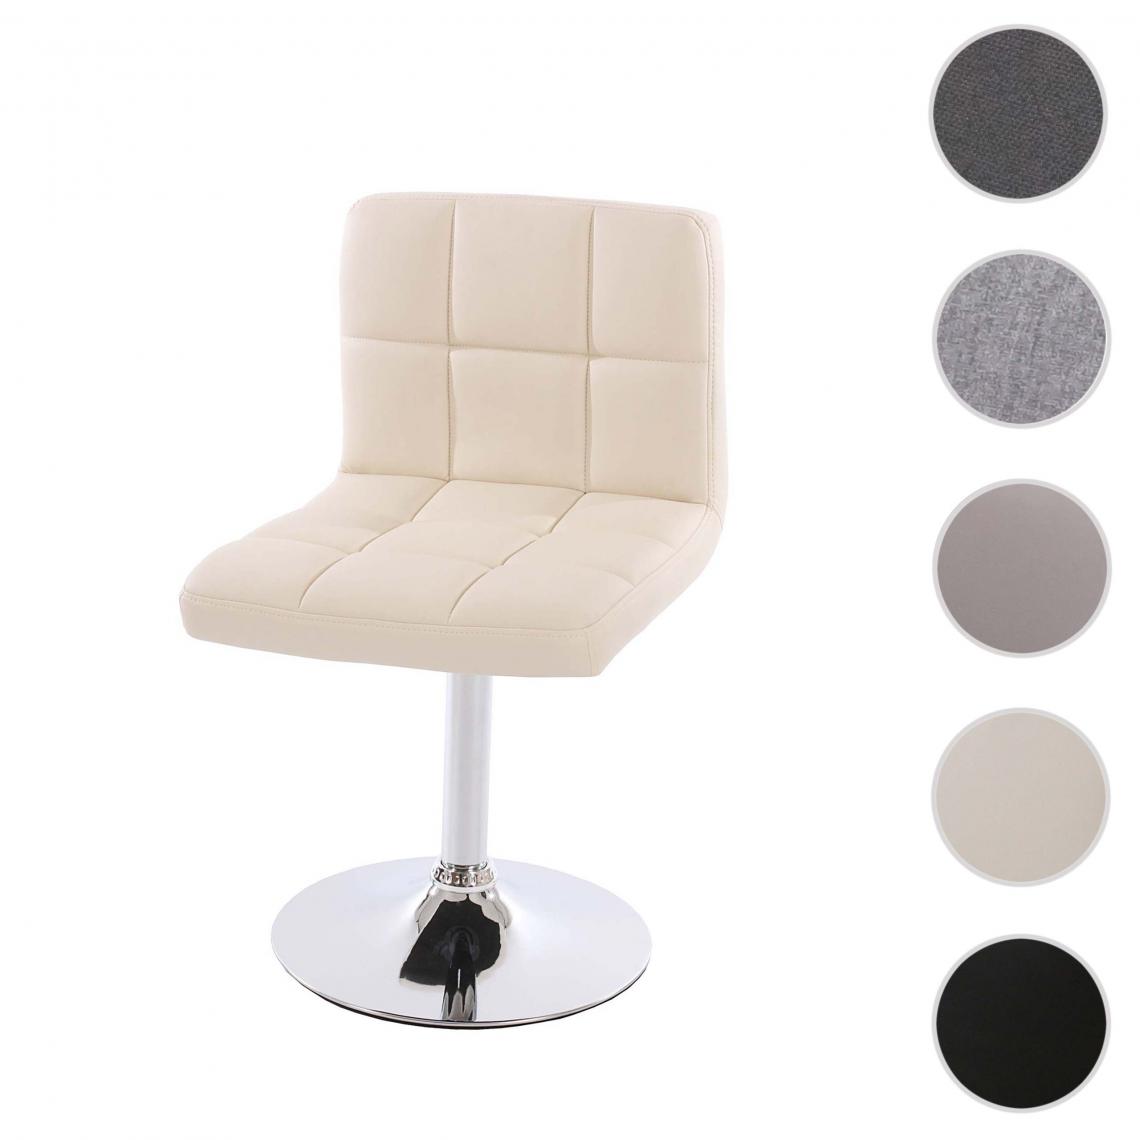 Mendler - Chaise de salle à manger Kavala, chaise de cuisine, pivotante ~ simili cuir crème, base chromée - Chaises